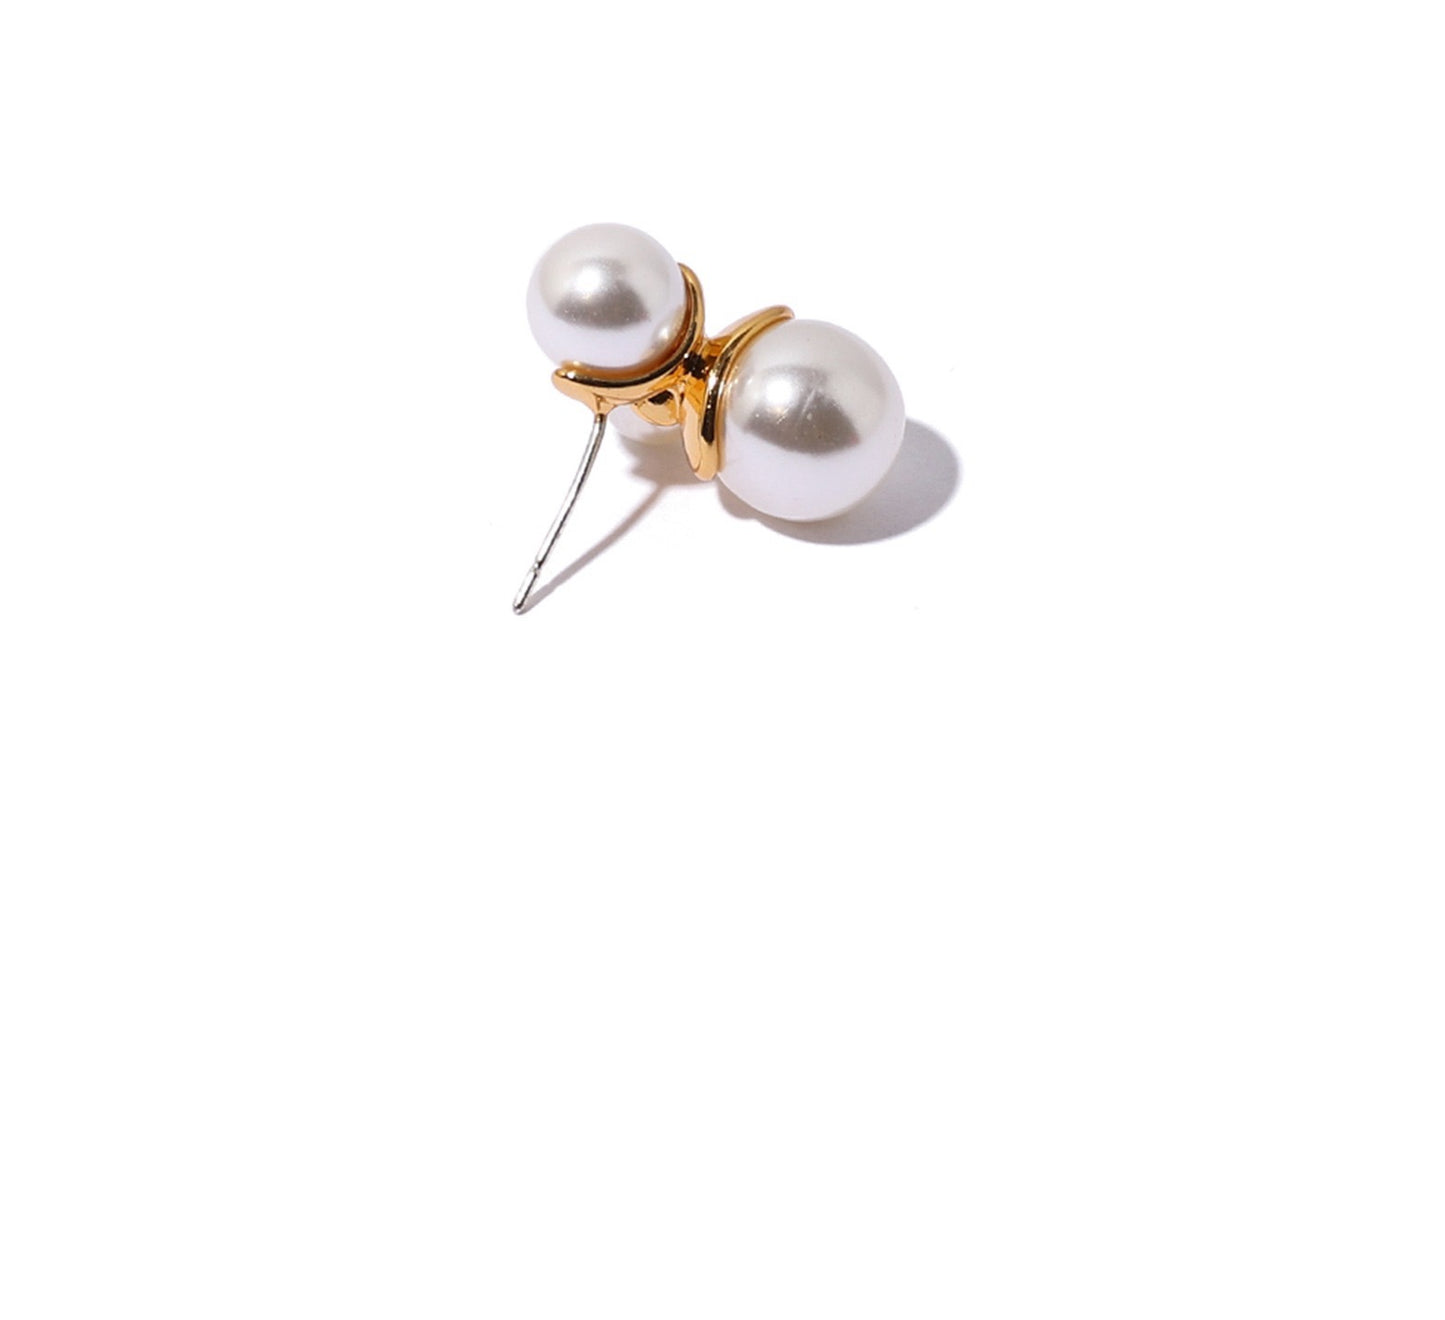 Stacked Pearl Earrings